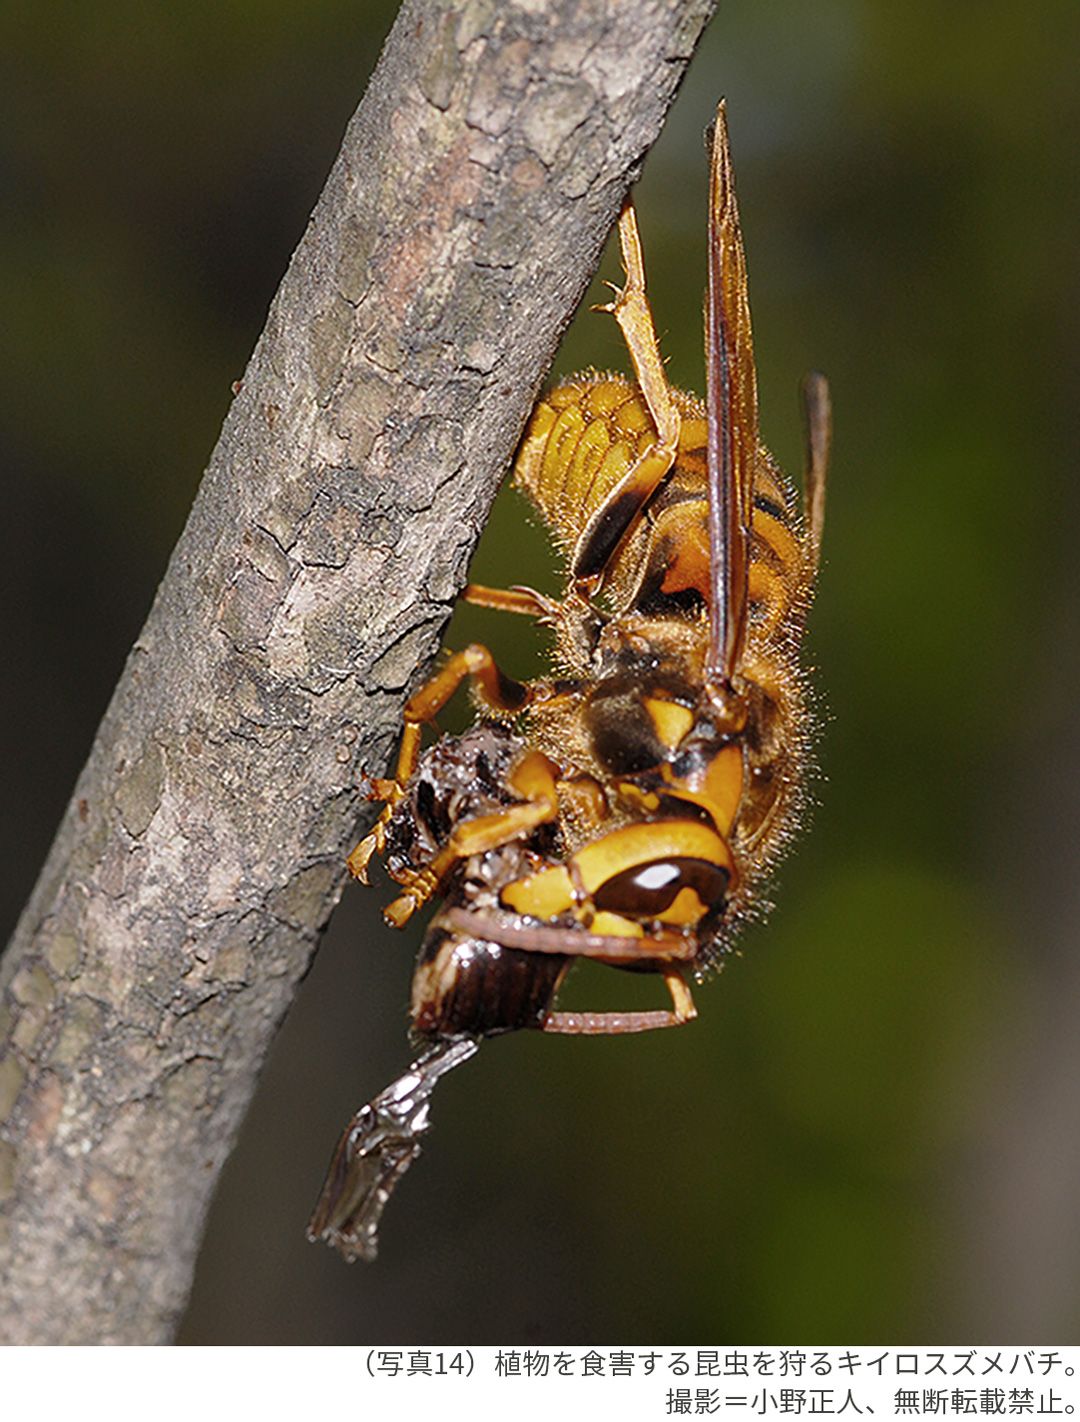 （写真14）植物を食害する昆虫を狩るキイロスズメバチ。撮影＝小野正人、無断転載禁止。